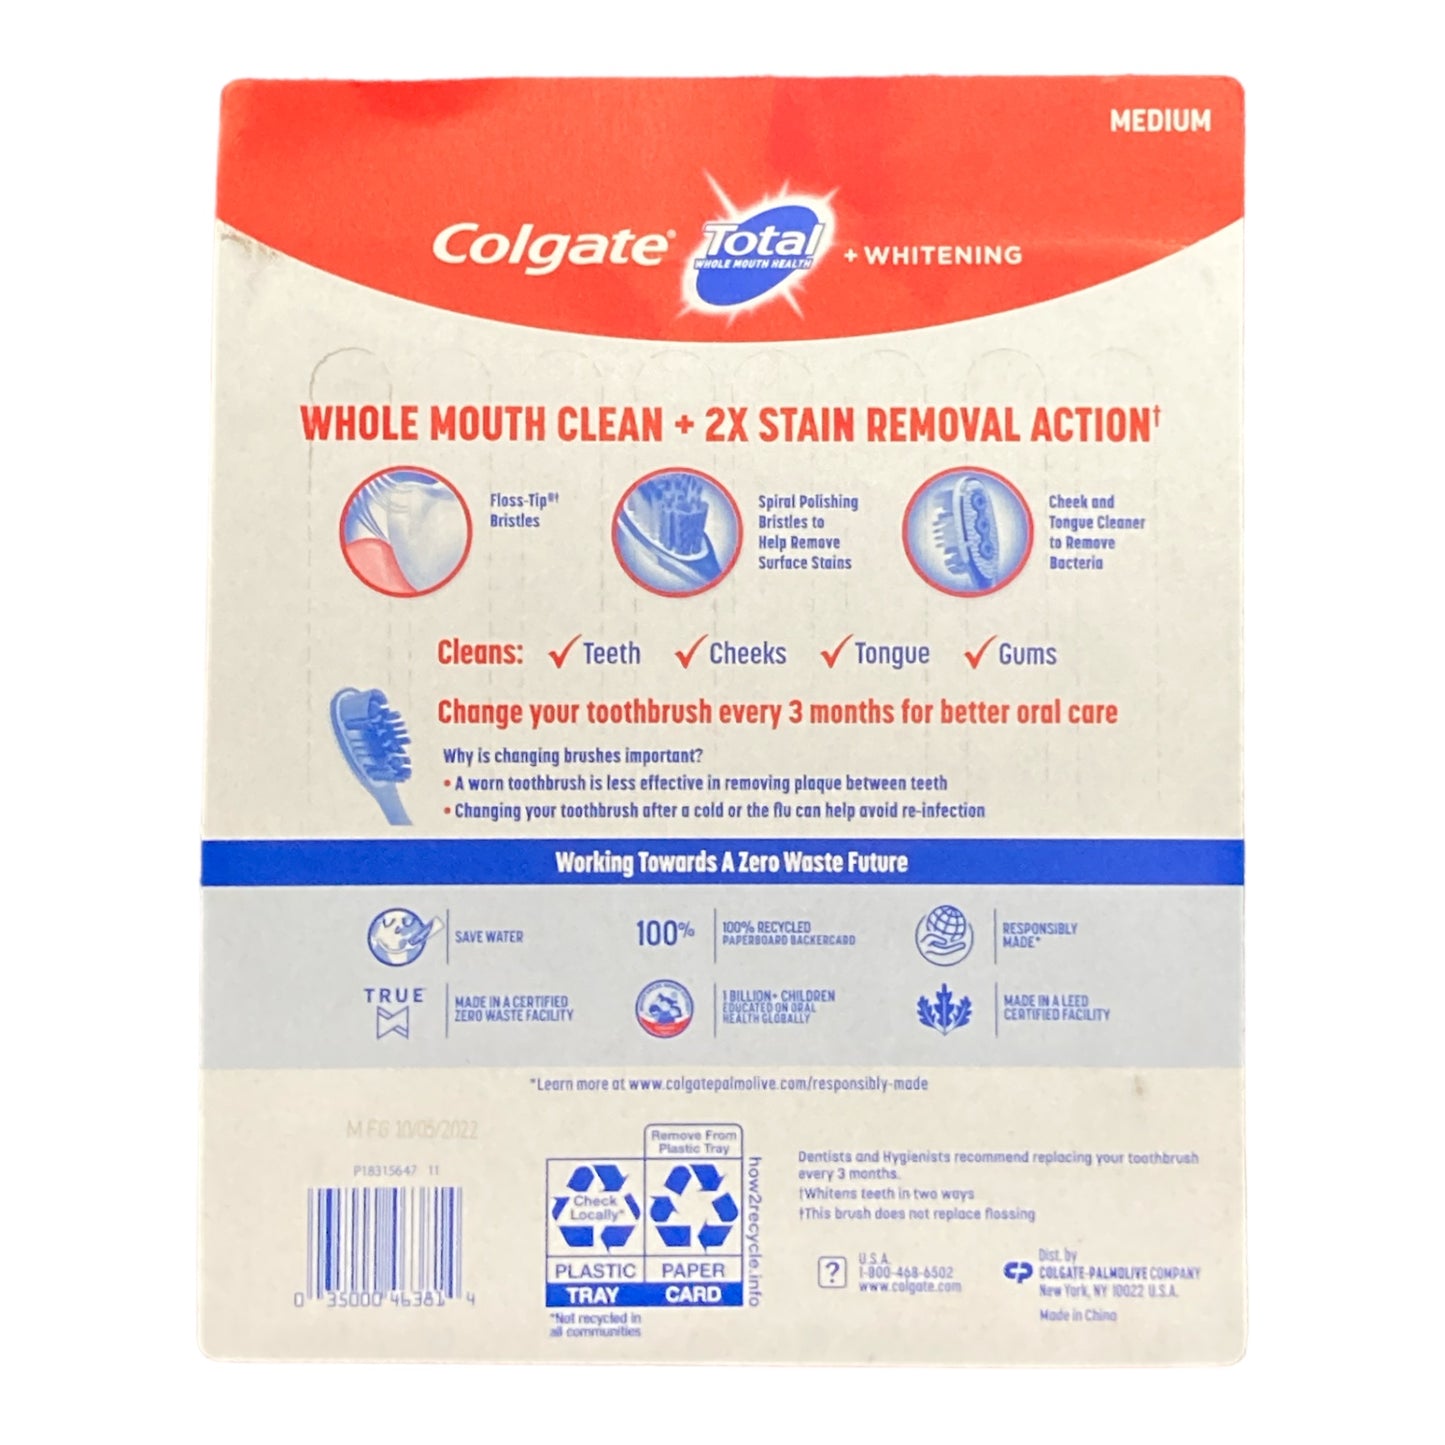 Colgate Total + Whitening Toothbrush Medium (8 Pack)